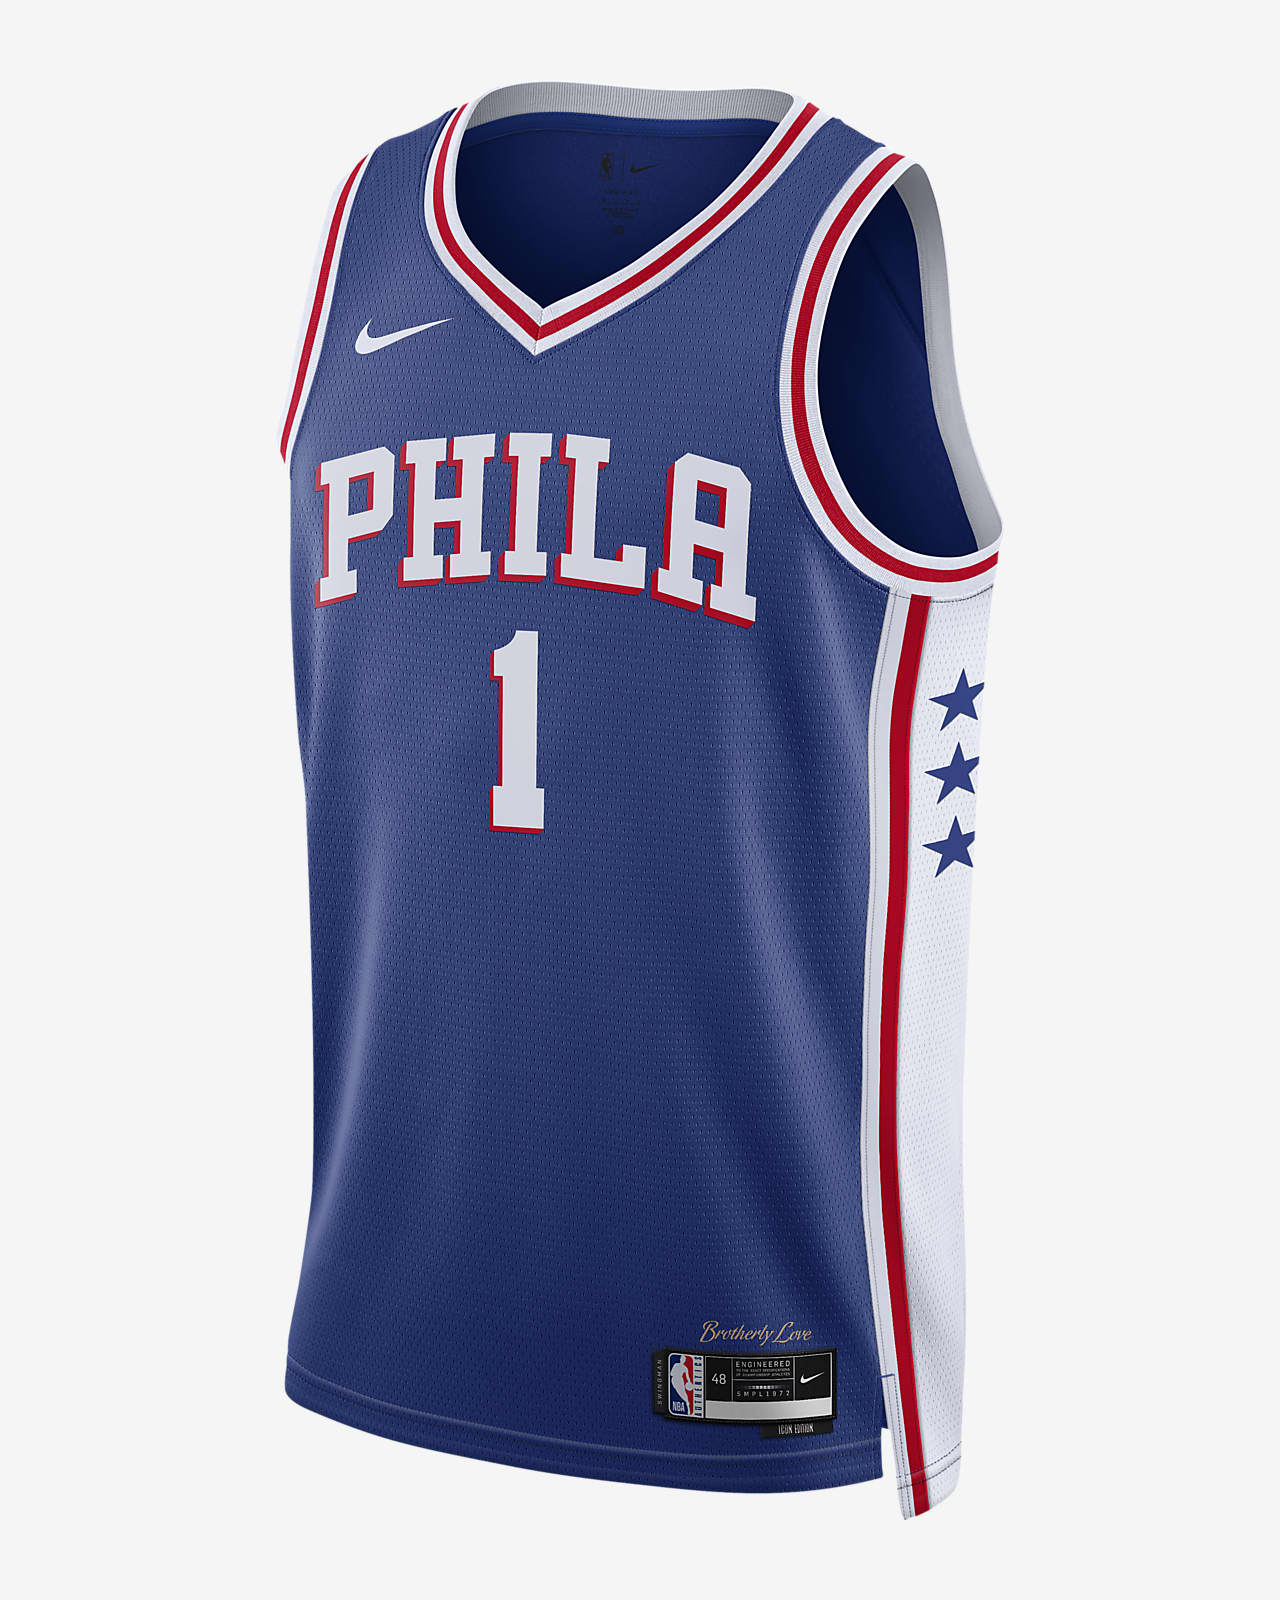 Rennen Mount Bank poeder Philadelphia 76ers Icon Edition 2022/23 Swingman Nike NBA-jersey met  Dri-FIT. Nike BE